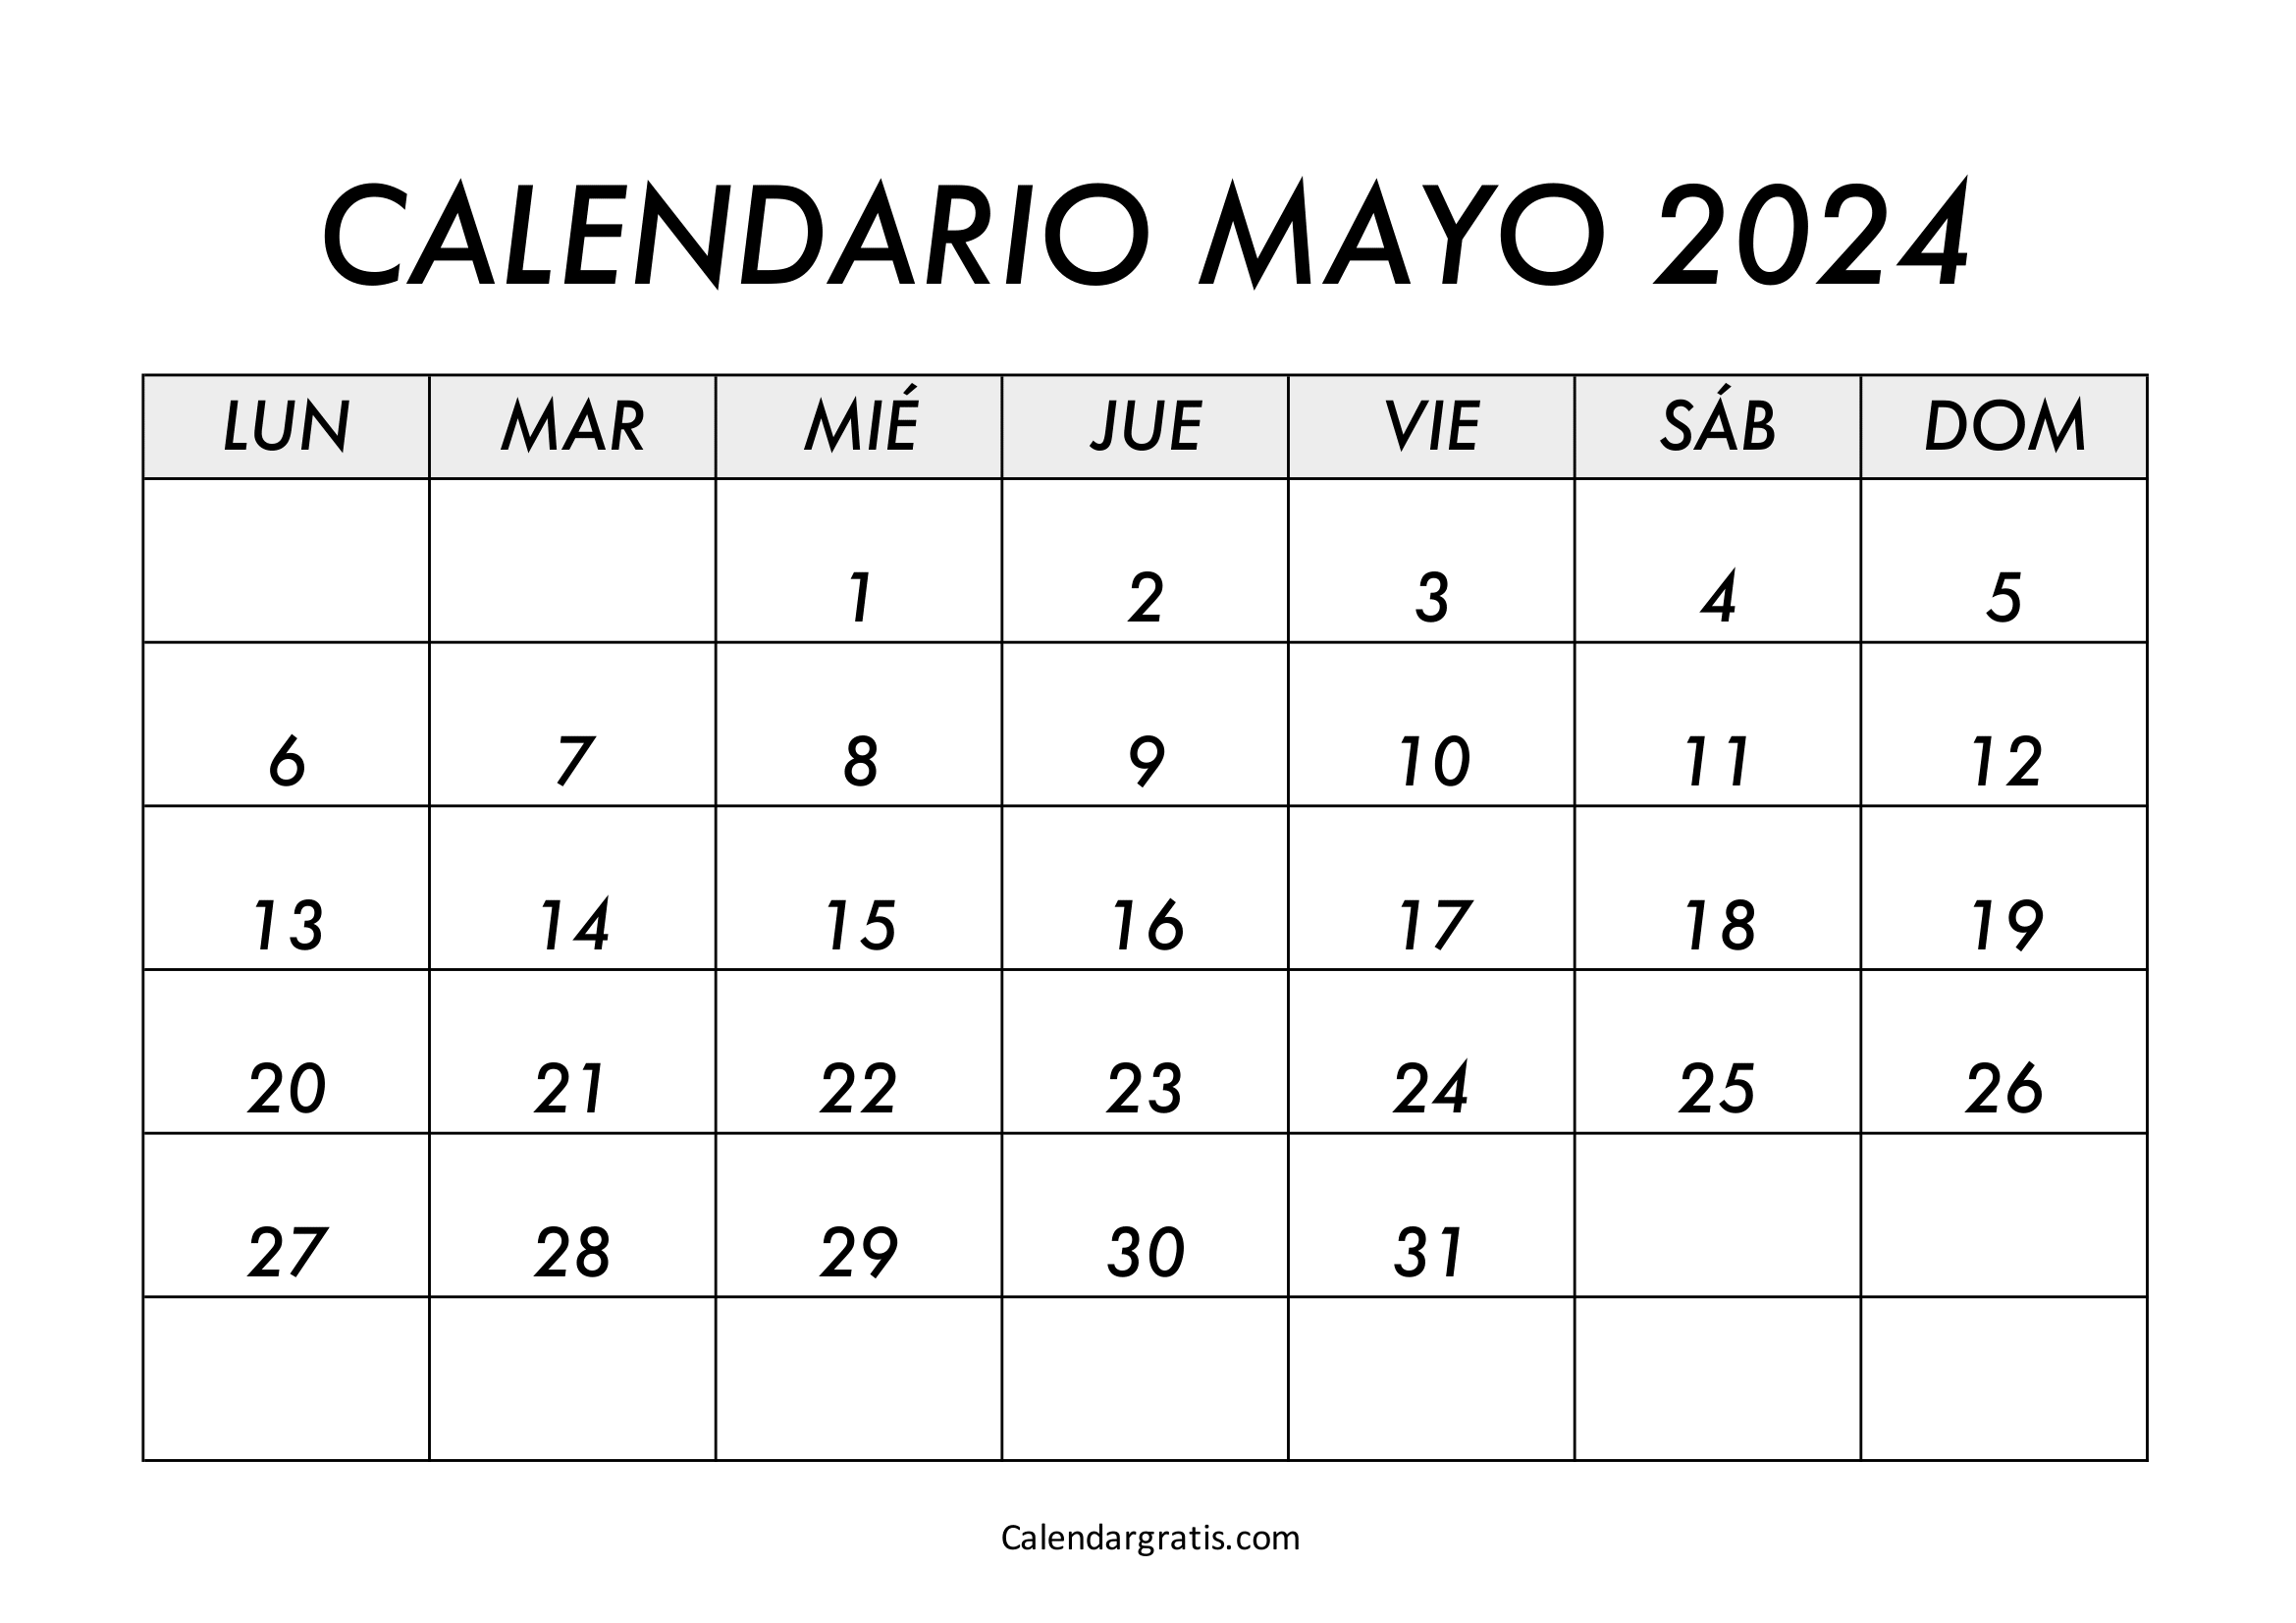 Calendario del mes de mayo 2024 para imprimir gratis